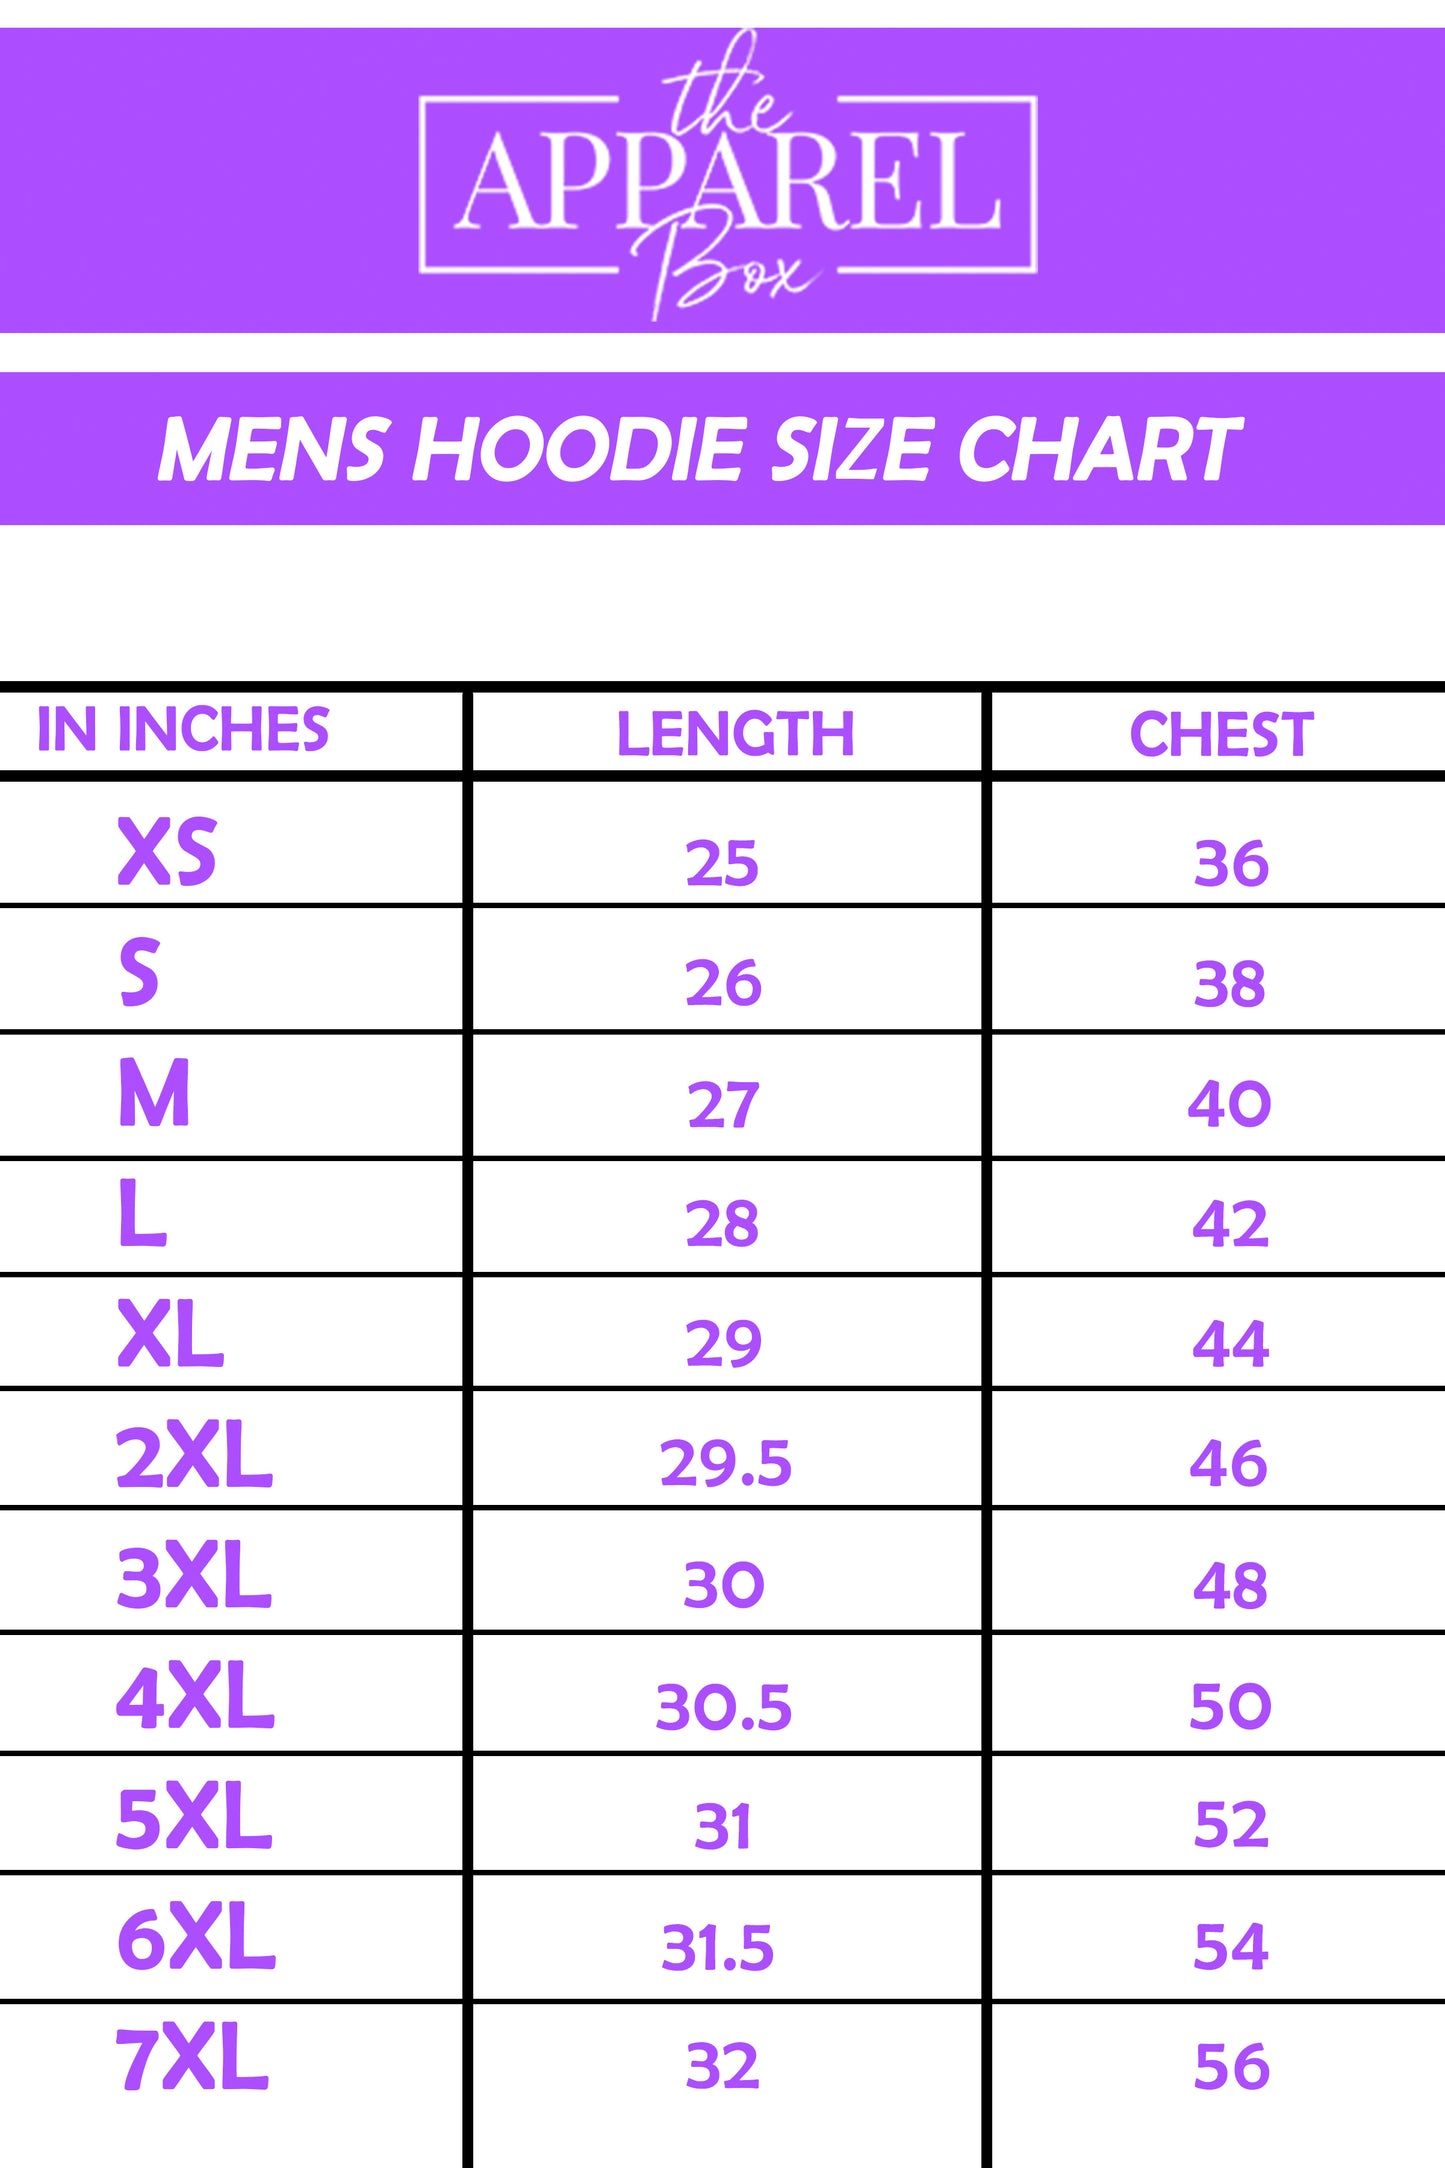 Men's Hoodie#1